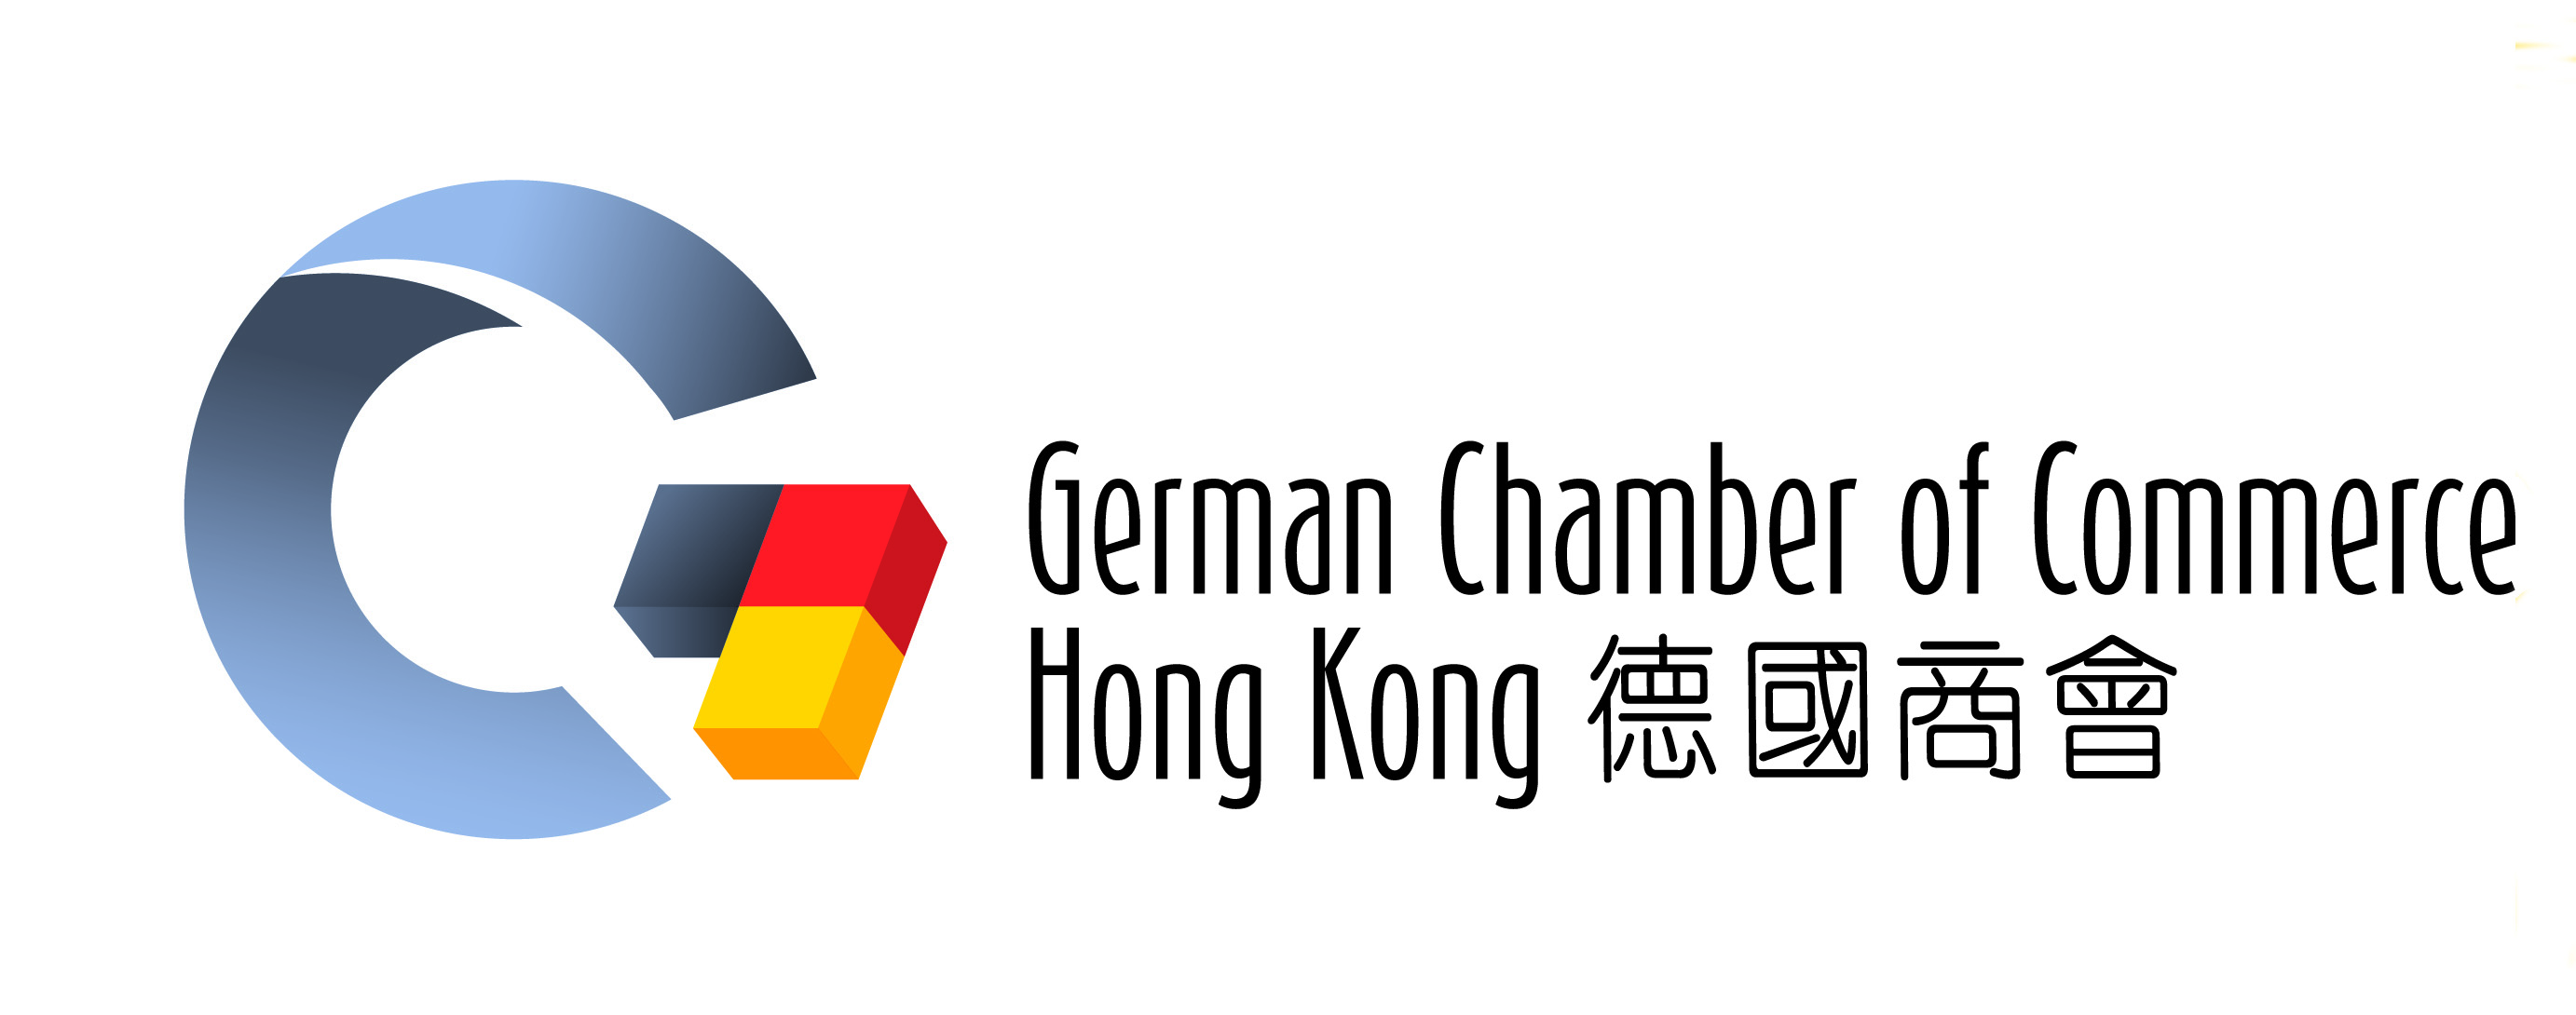 German coc hongkong logo